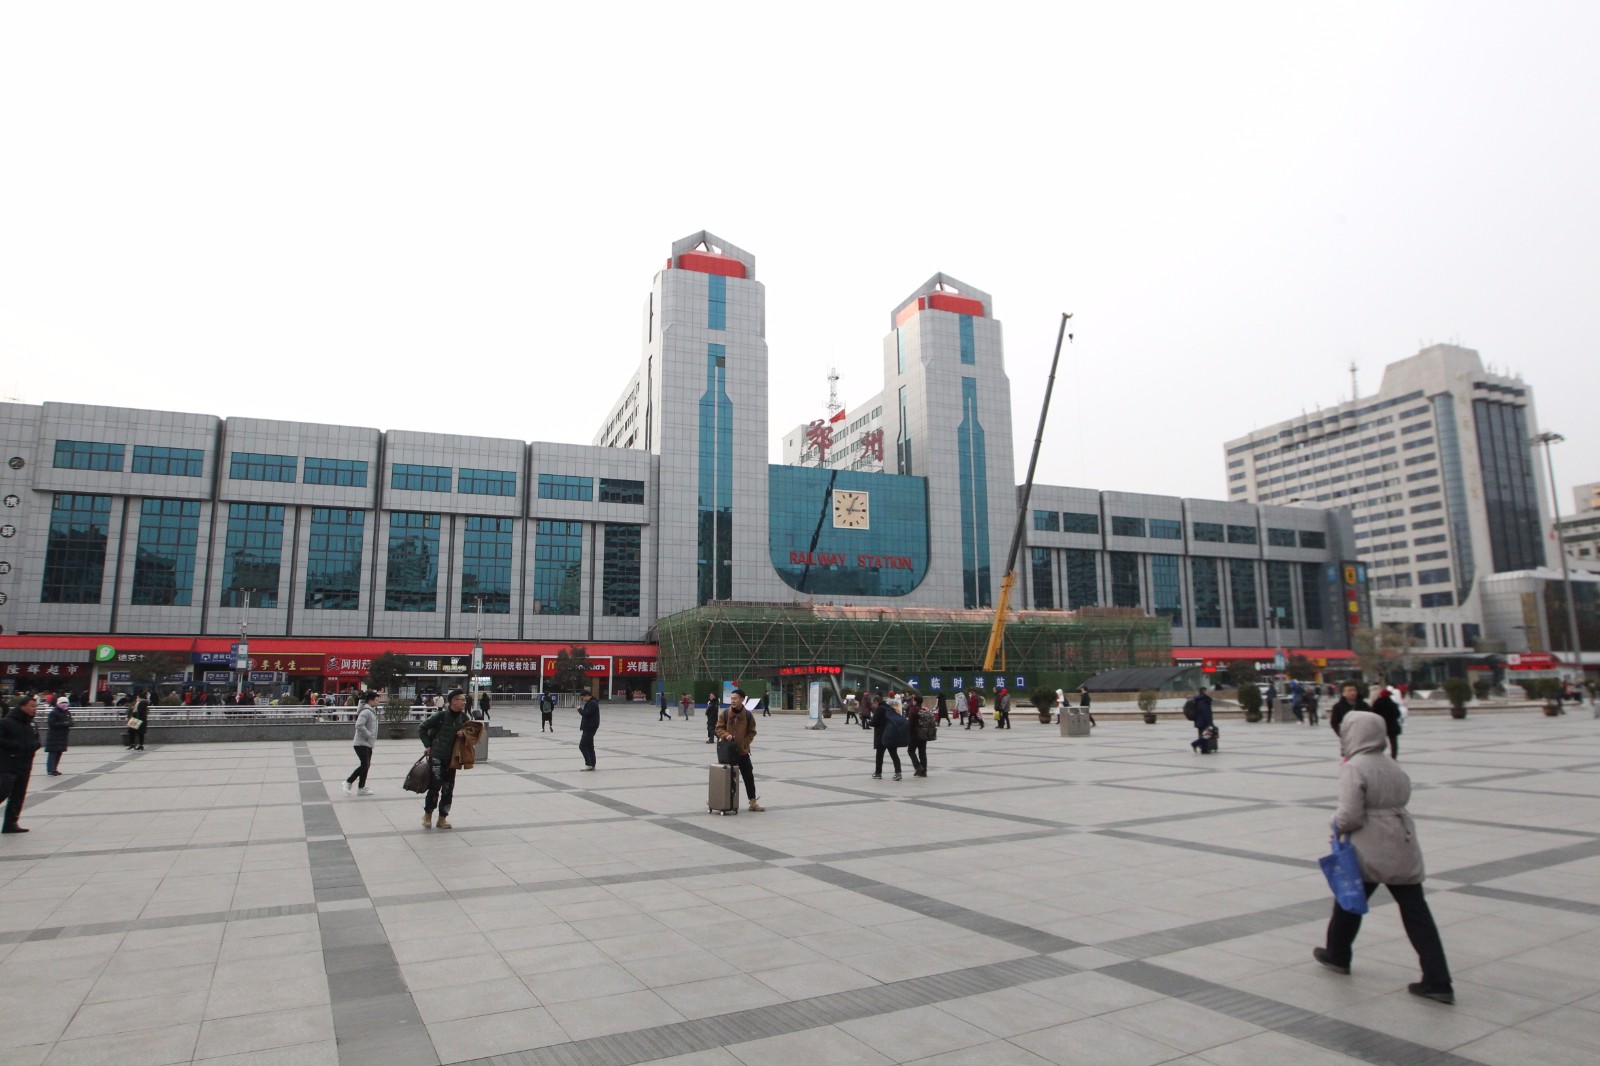 郑县火车站图片